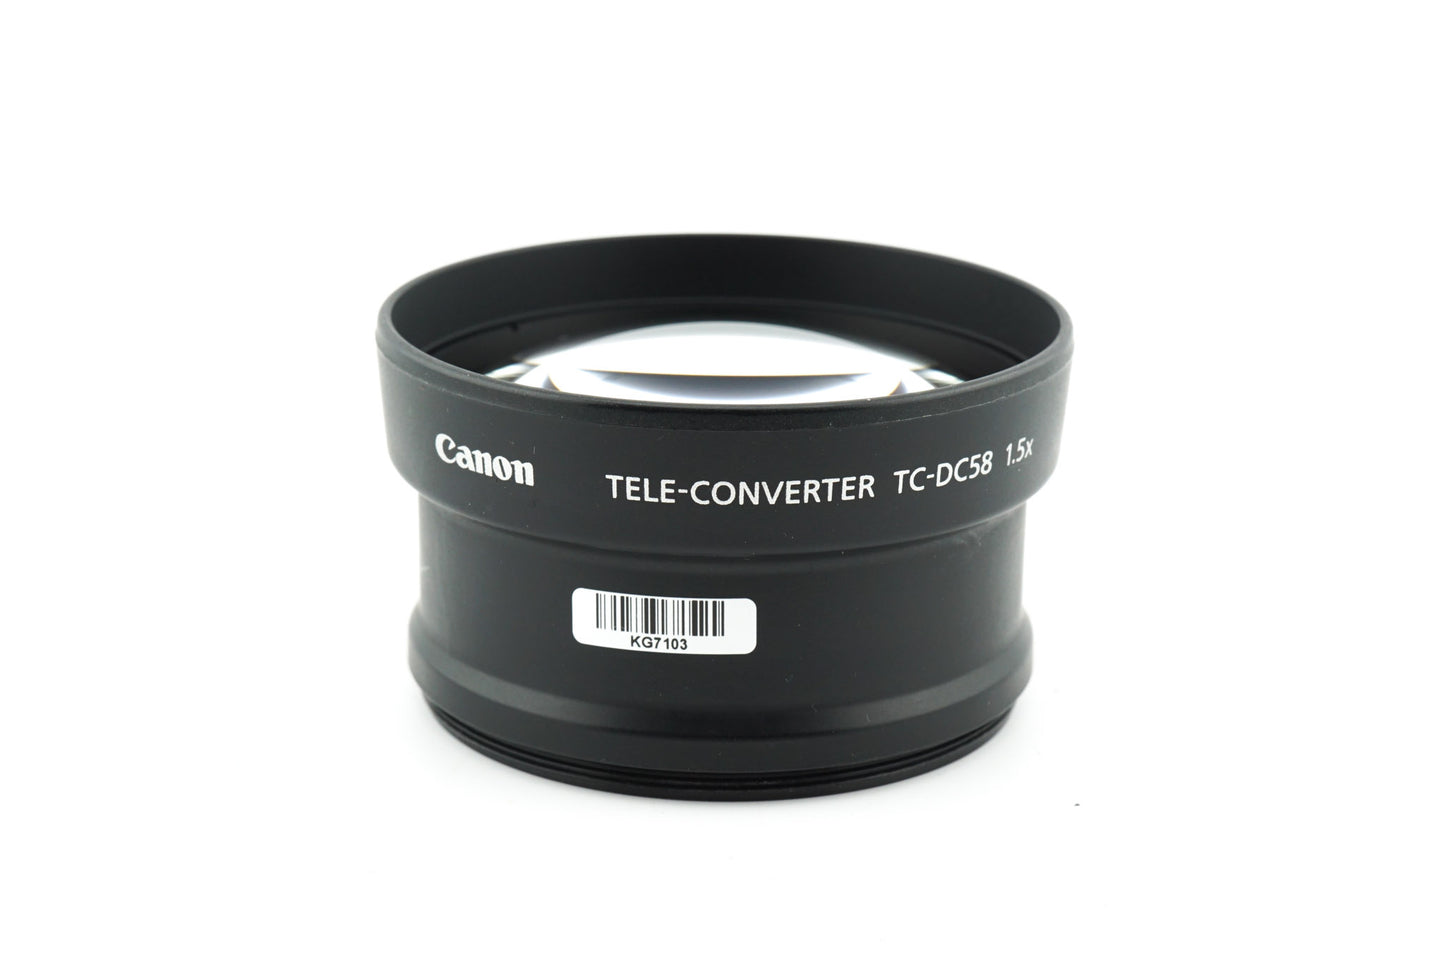 Canon Tele Converter TC-DC58 1.5x - Accessory